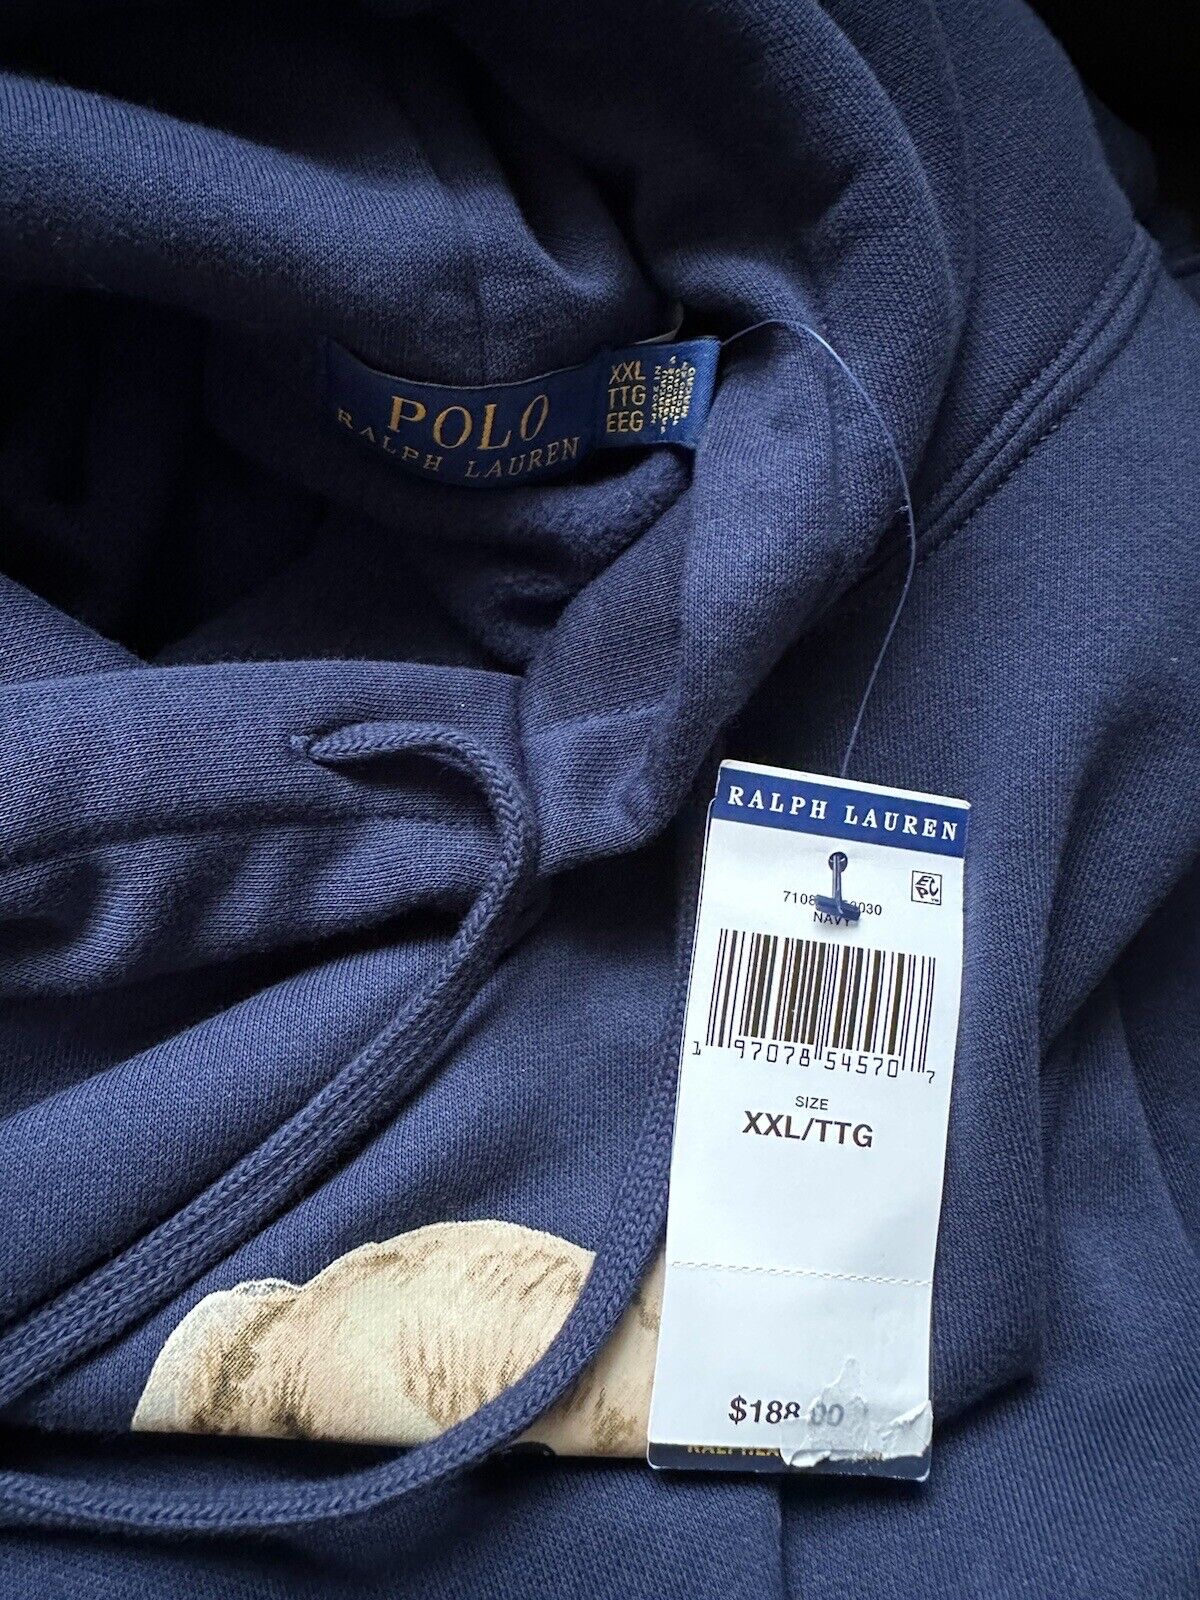 Толстовка с медведем Polo Ralph Lauren за 188 долларов США и синяя толстовка с капюшоном 2XL/2TTG 